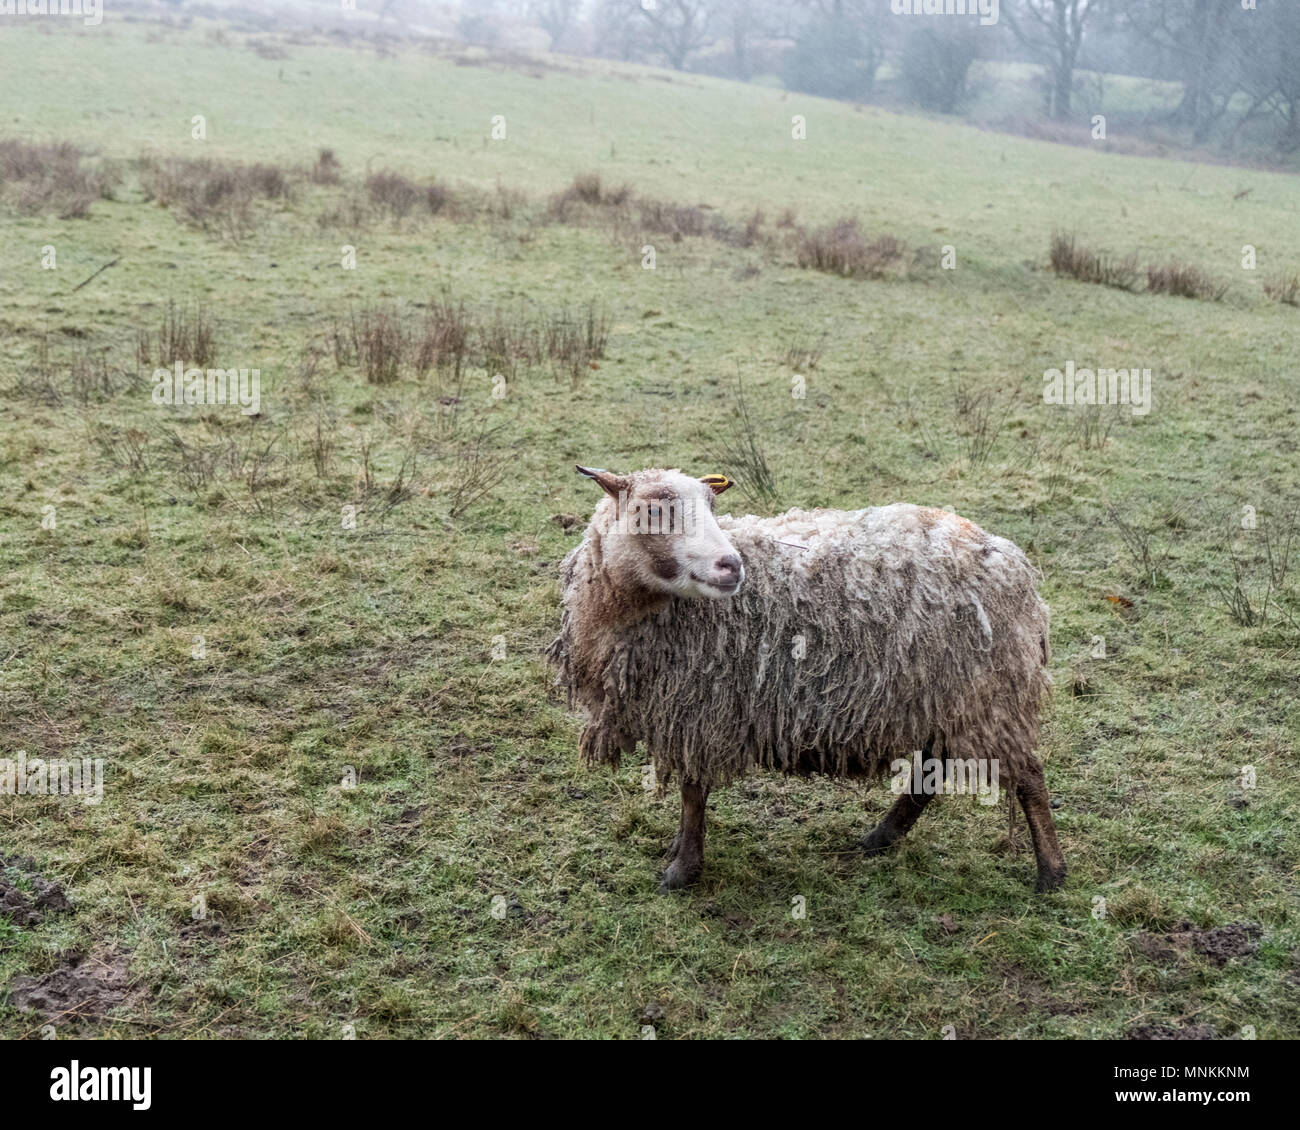 Ein sehr nasses und schmutziges Schaf Stehend auf einem Hügel Feld in Regen, Derbyshire, Peak District, England, Großbritannien Stockfoto